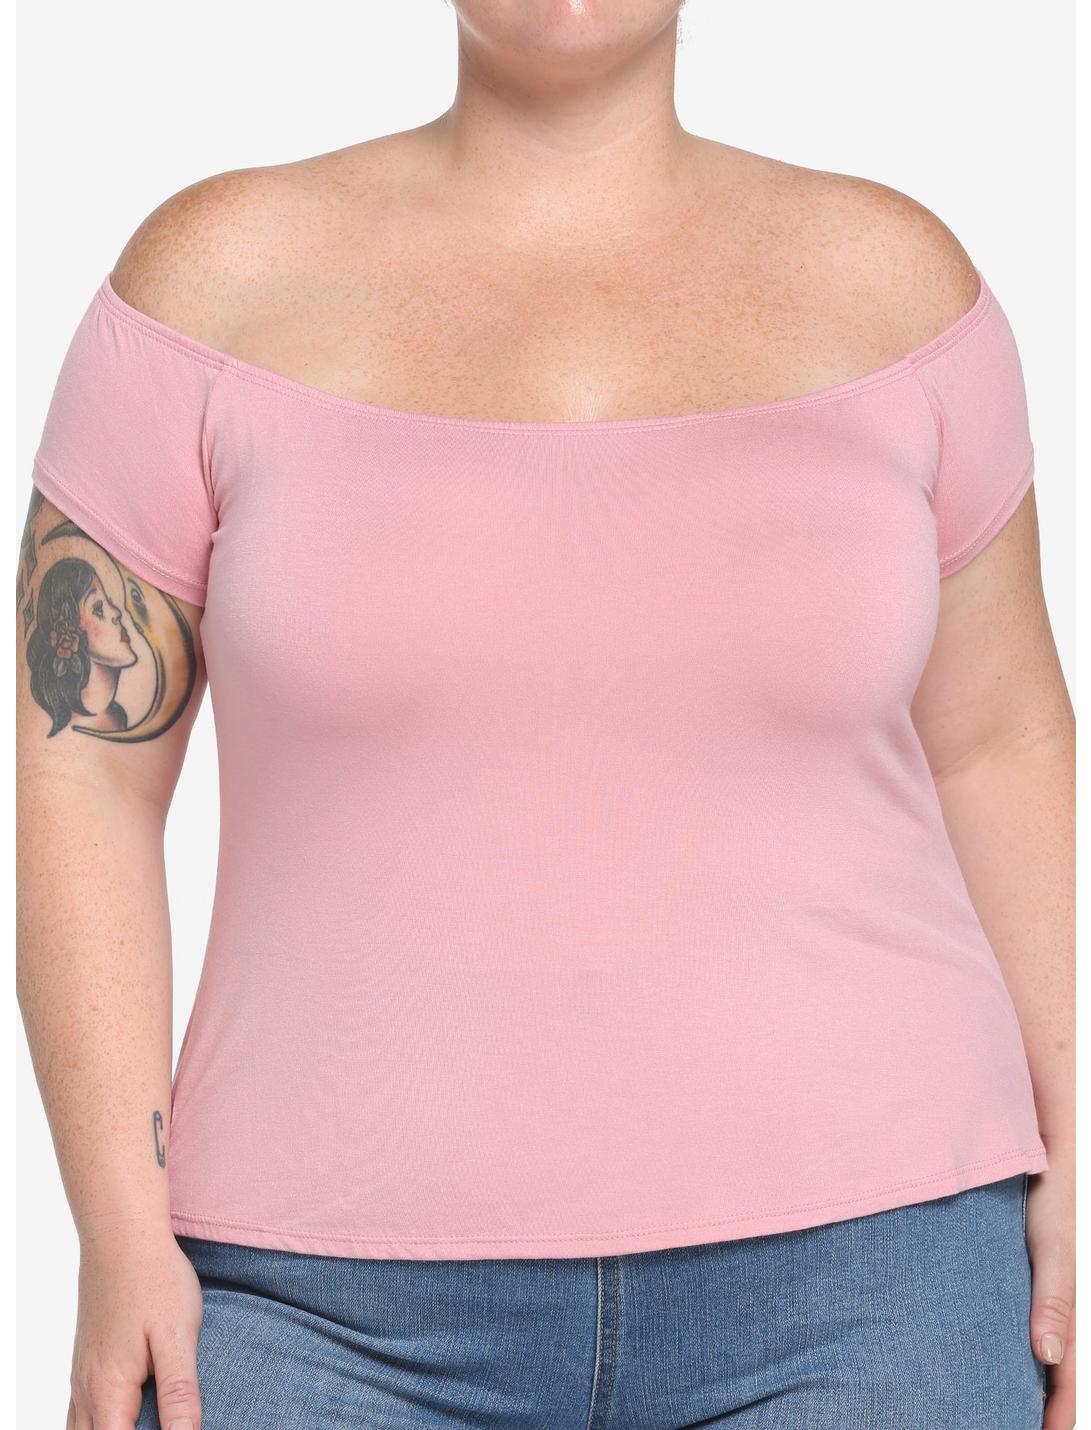 Pink Off-The-Shoulder Top Plus Size, PINK, hi-res